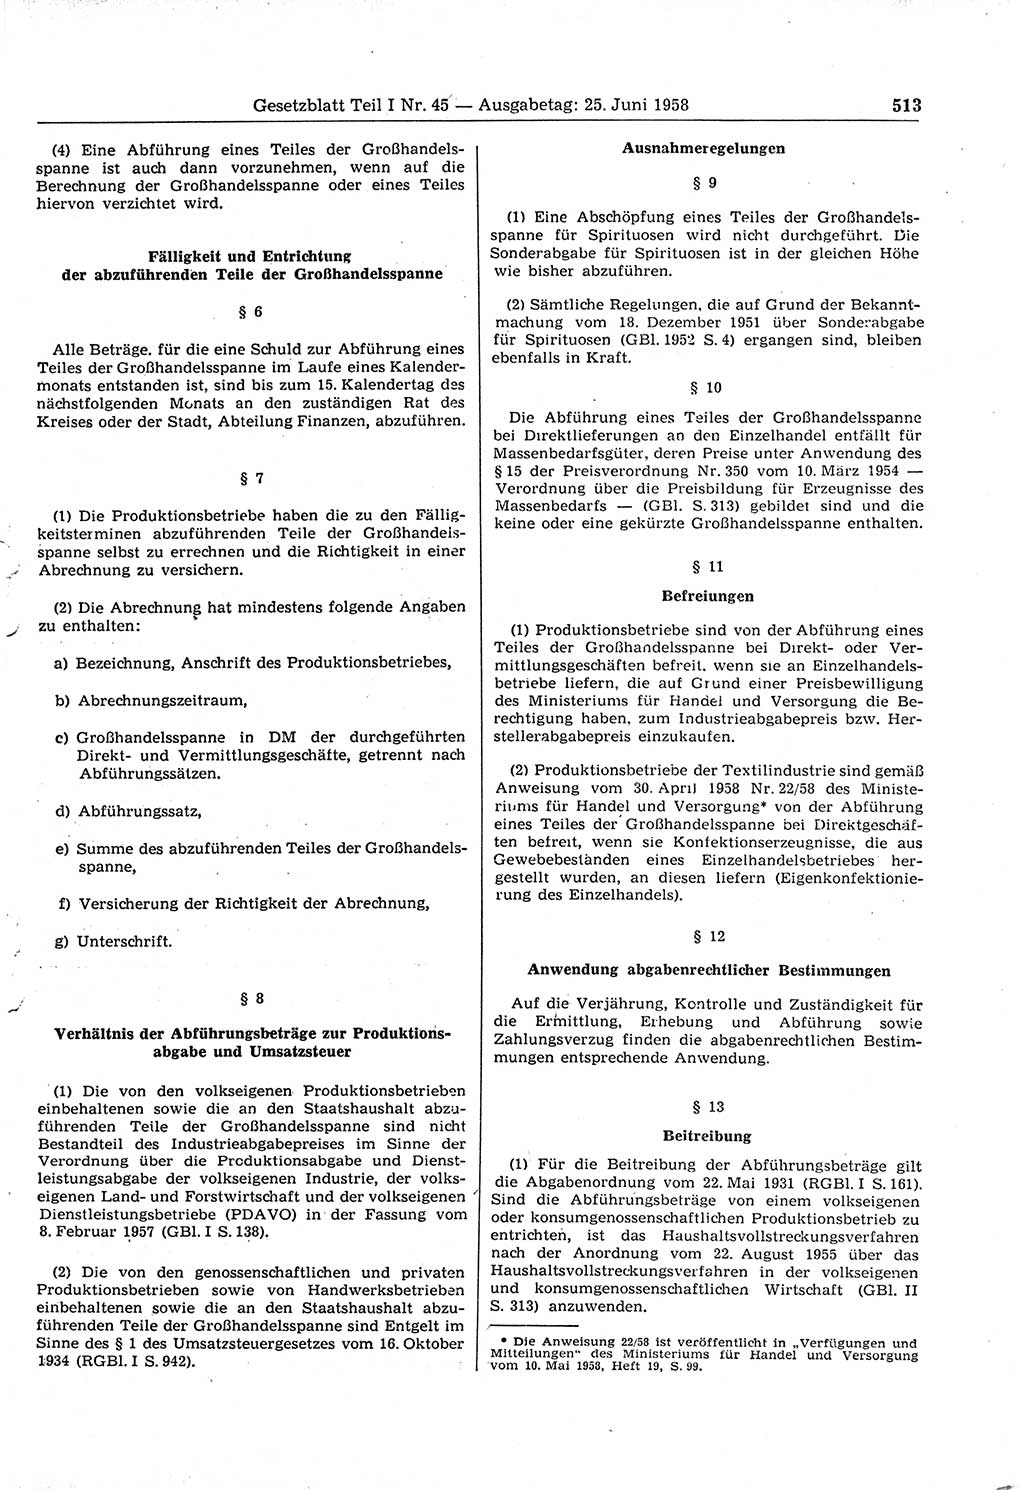 Gesetzblatt (GBl.) der Deutschen Demokratischen Republik (DDR) Teil Ⅰ 1958, Seite 513 (GBl. DDR Ⅰ 1958, S. 513)